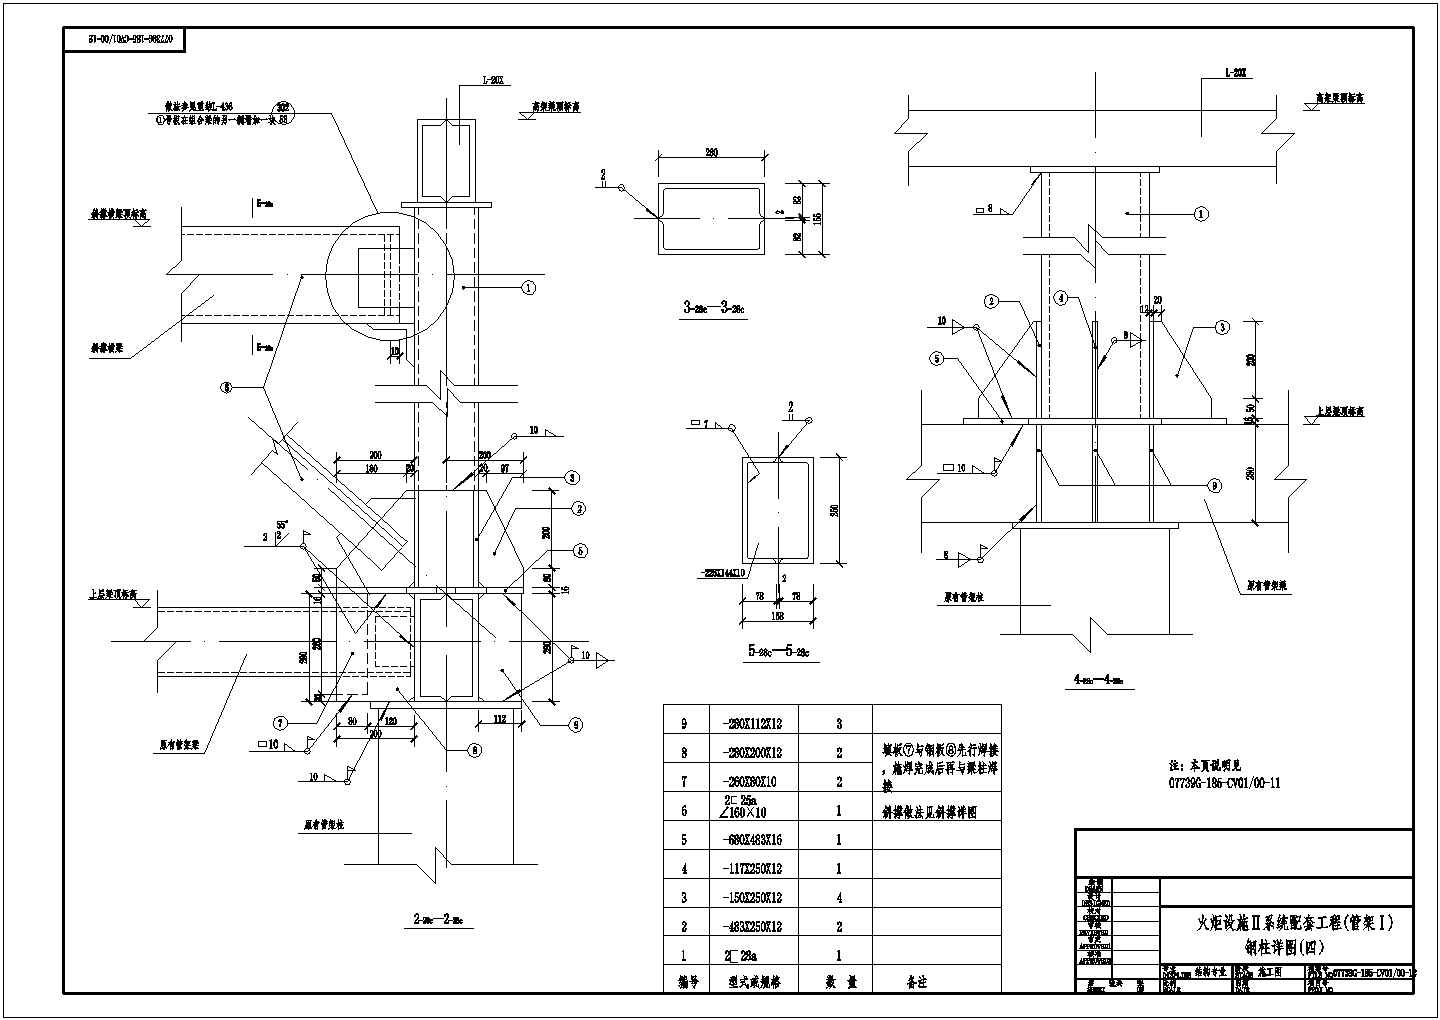 某工厂火炬设施系统钢结构管架加层设计施工图纸